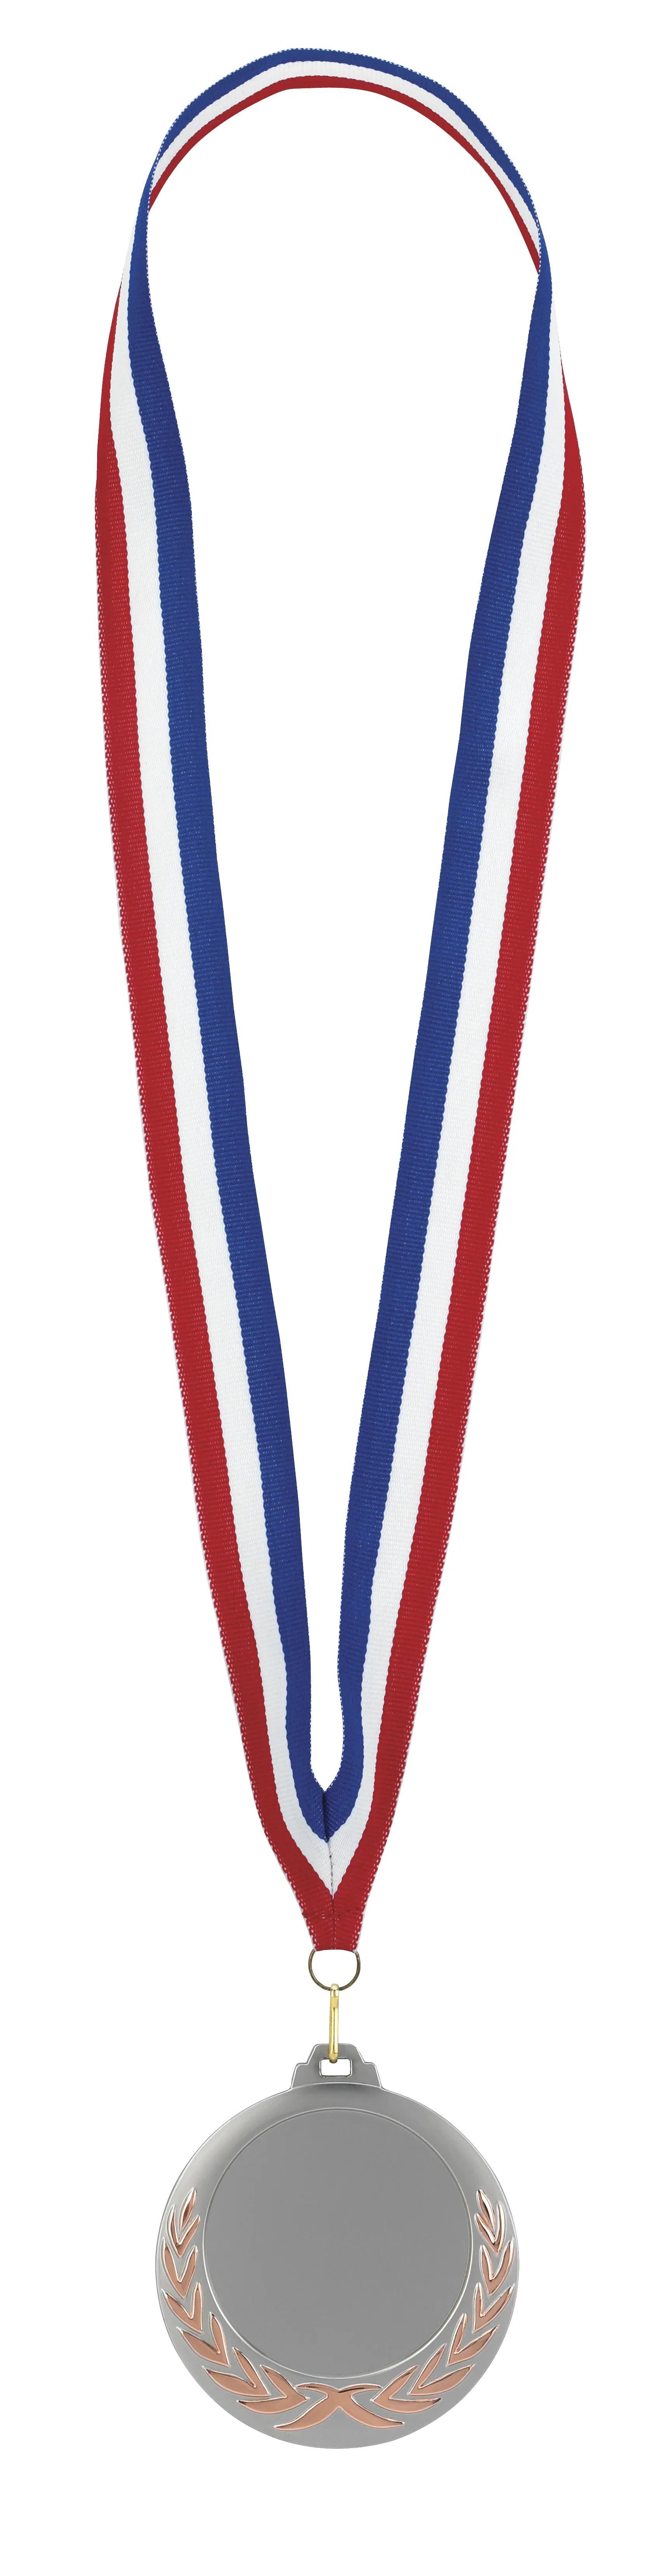 Laurel Wreath Medal 2 of 26